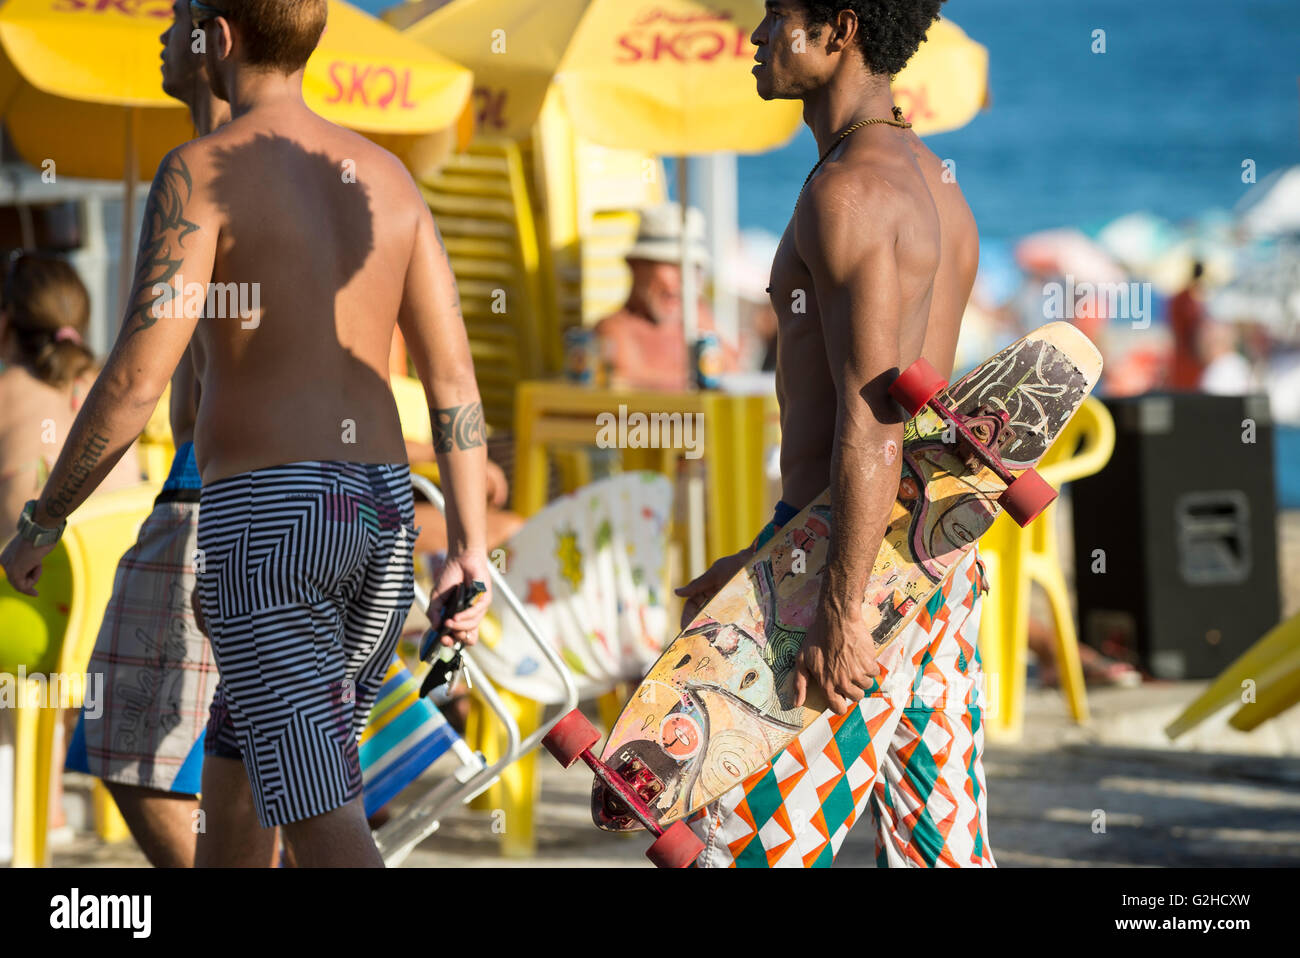 RIO DE JANEIRO - le 6 mars 2016 : Carioca brésiliens marcher devant un kiosque jaune sur le front promenade à la plage d'Ipanema. Banque D'Images